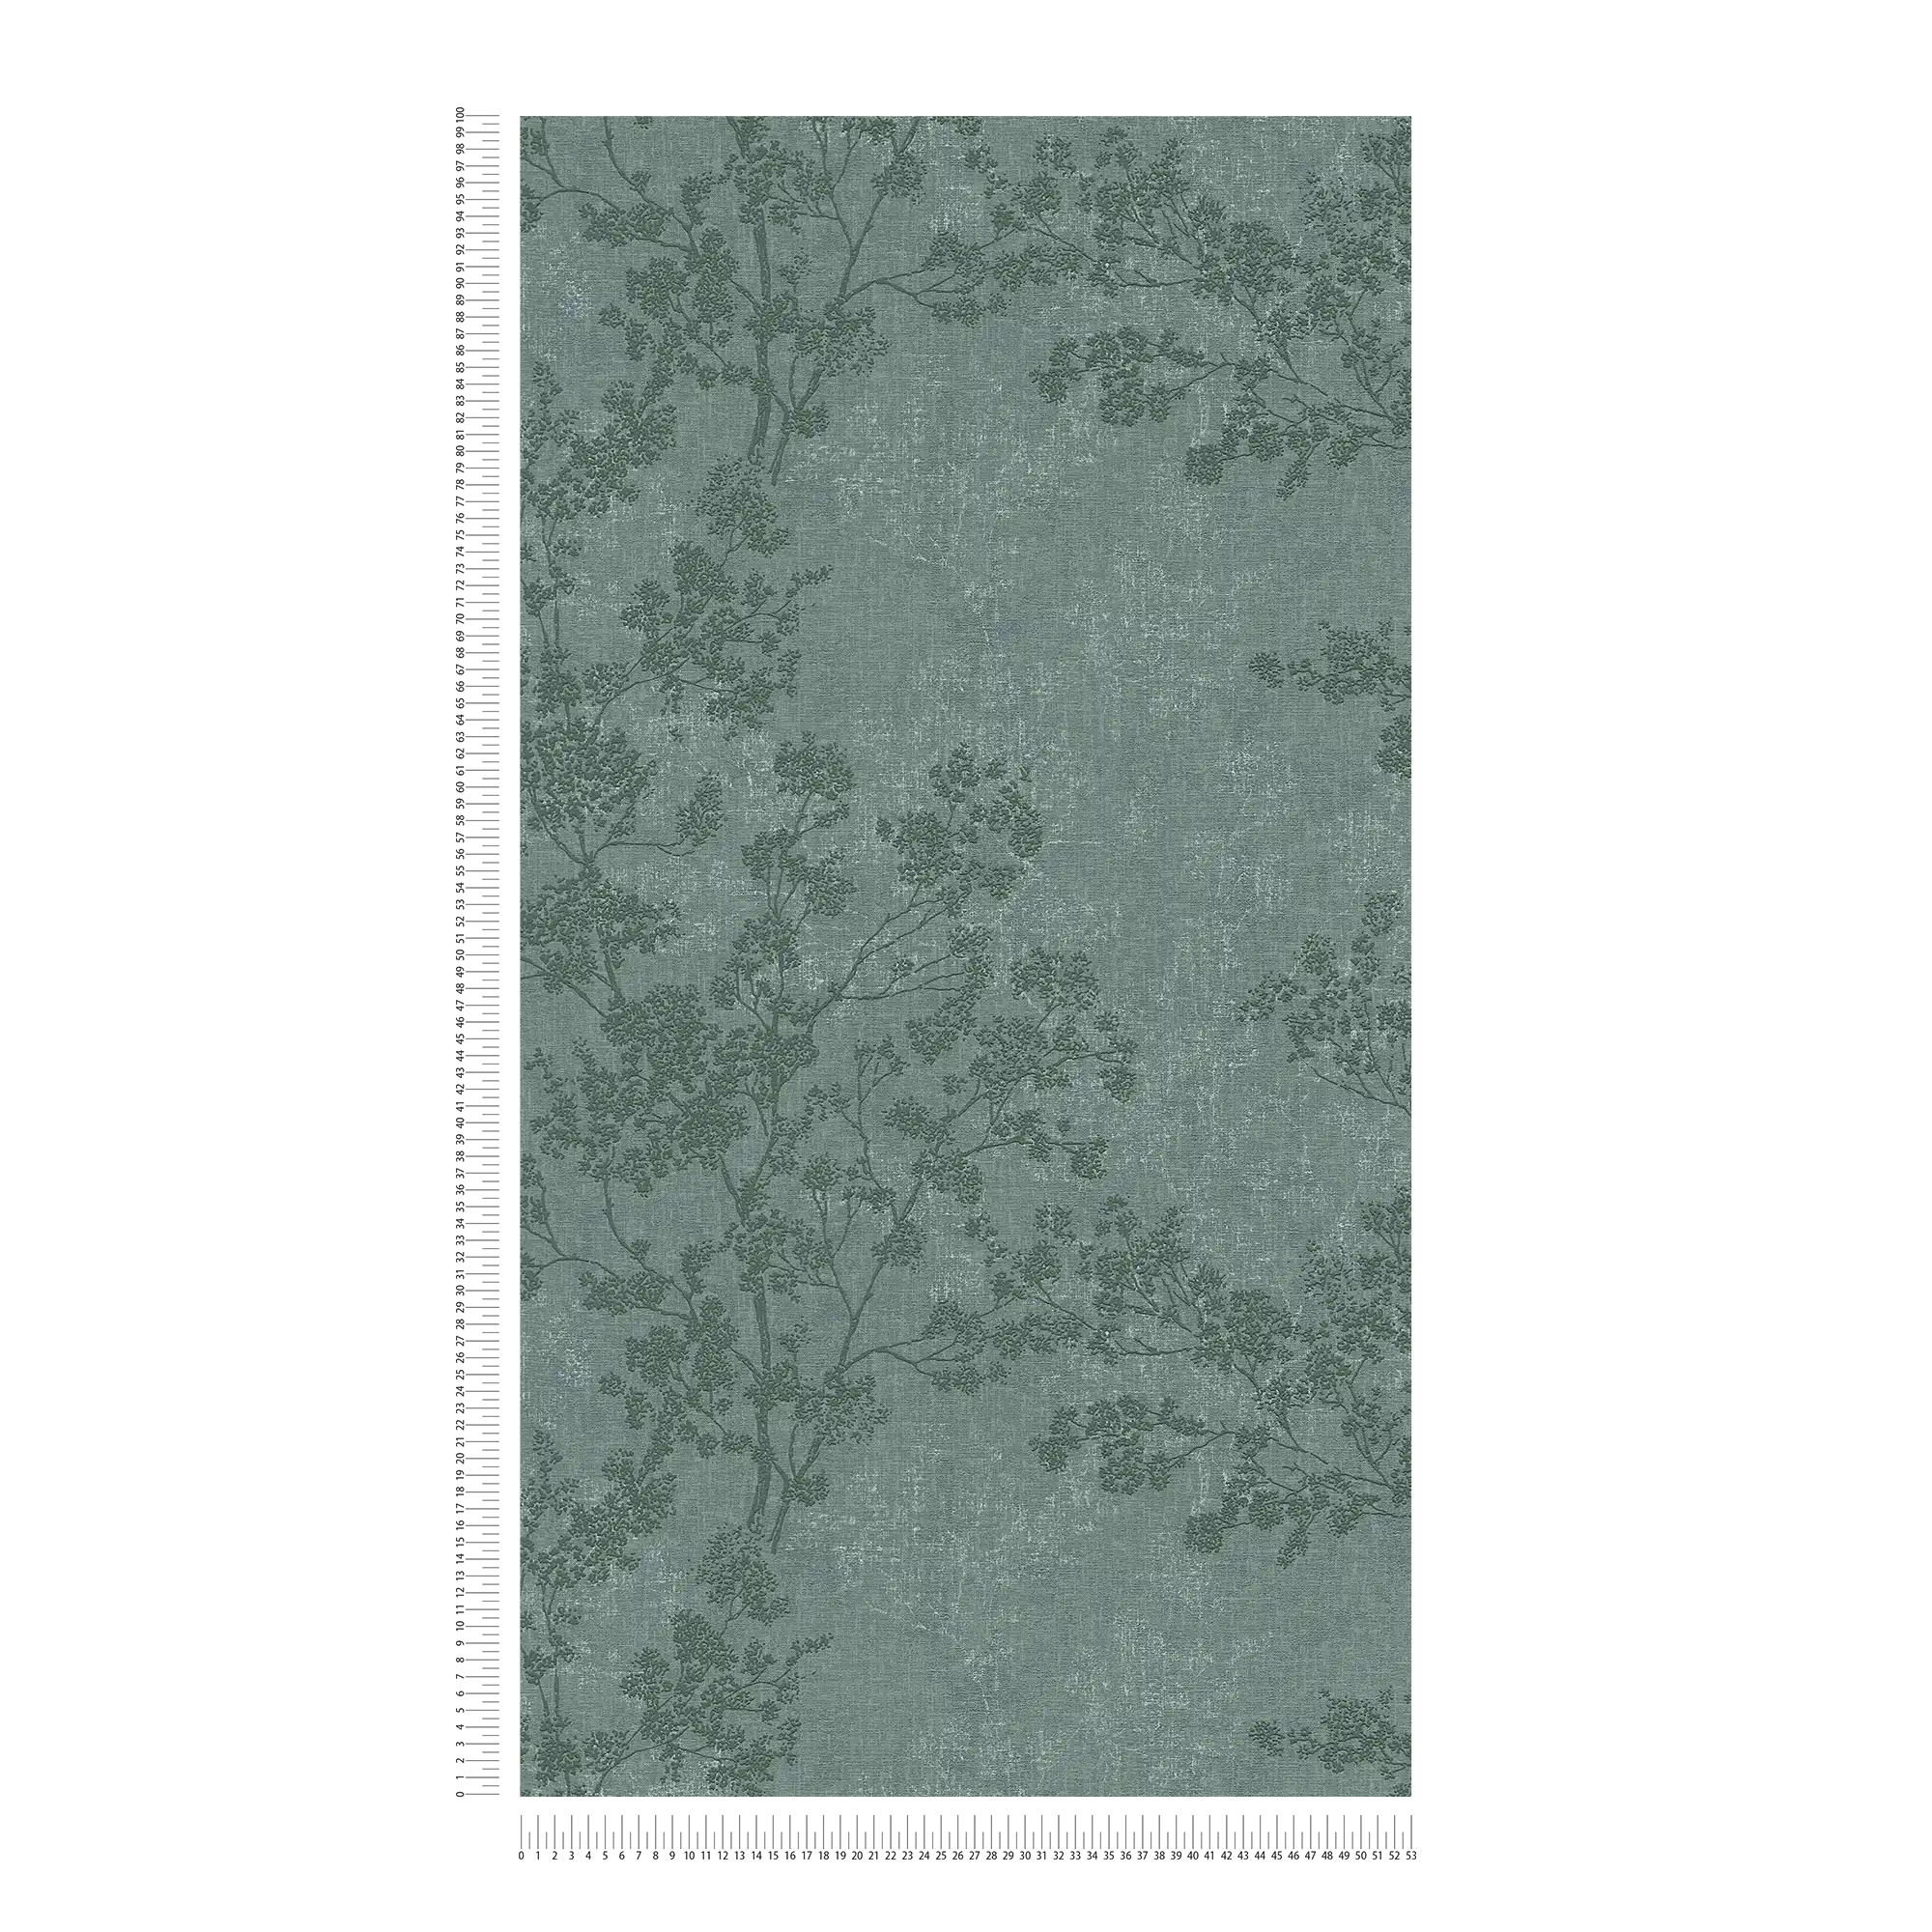             papel pintado con hojas en aspecto de lino - verde
        